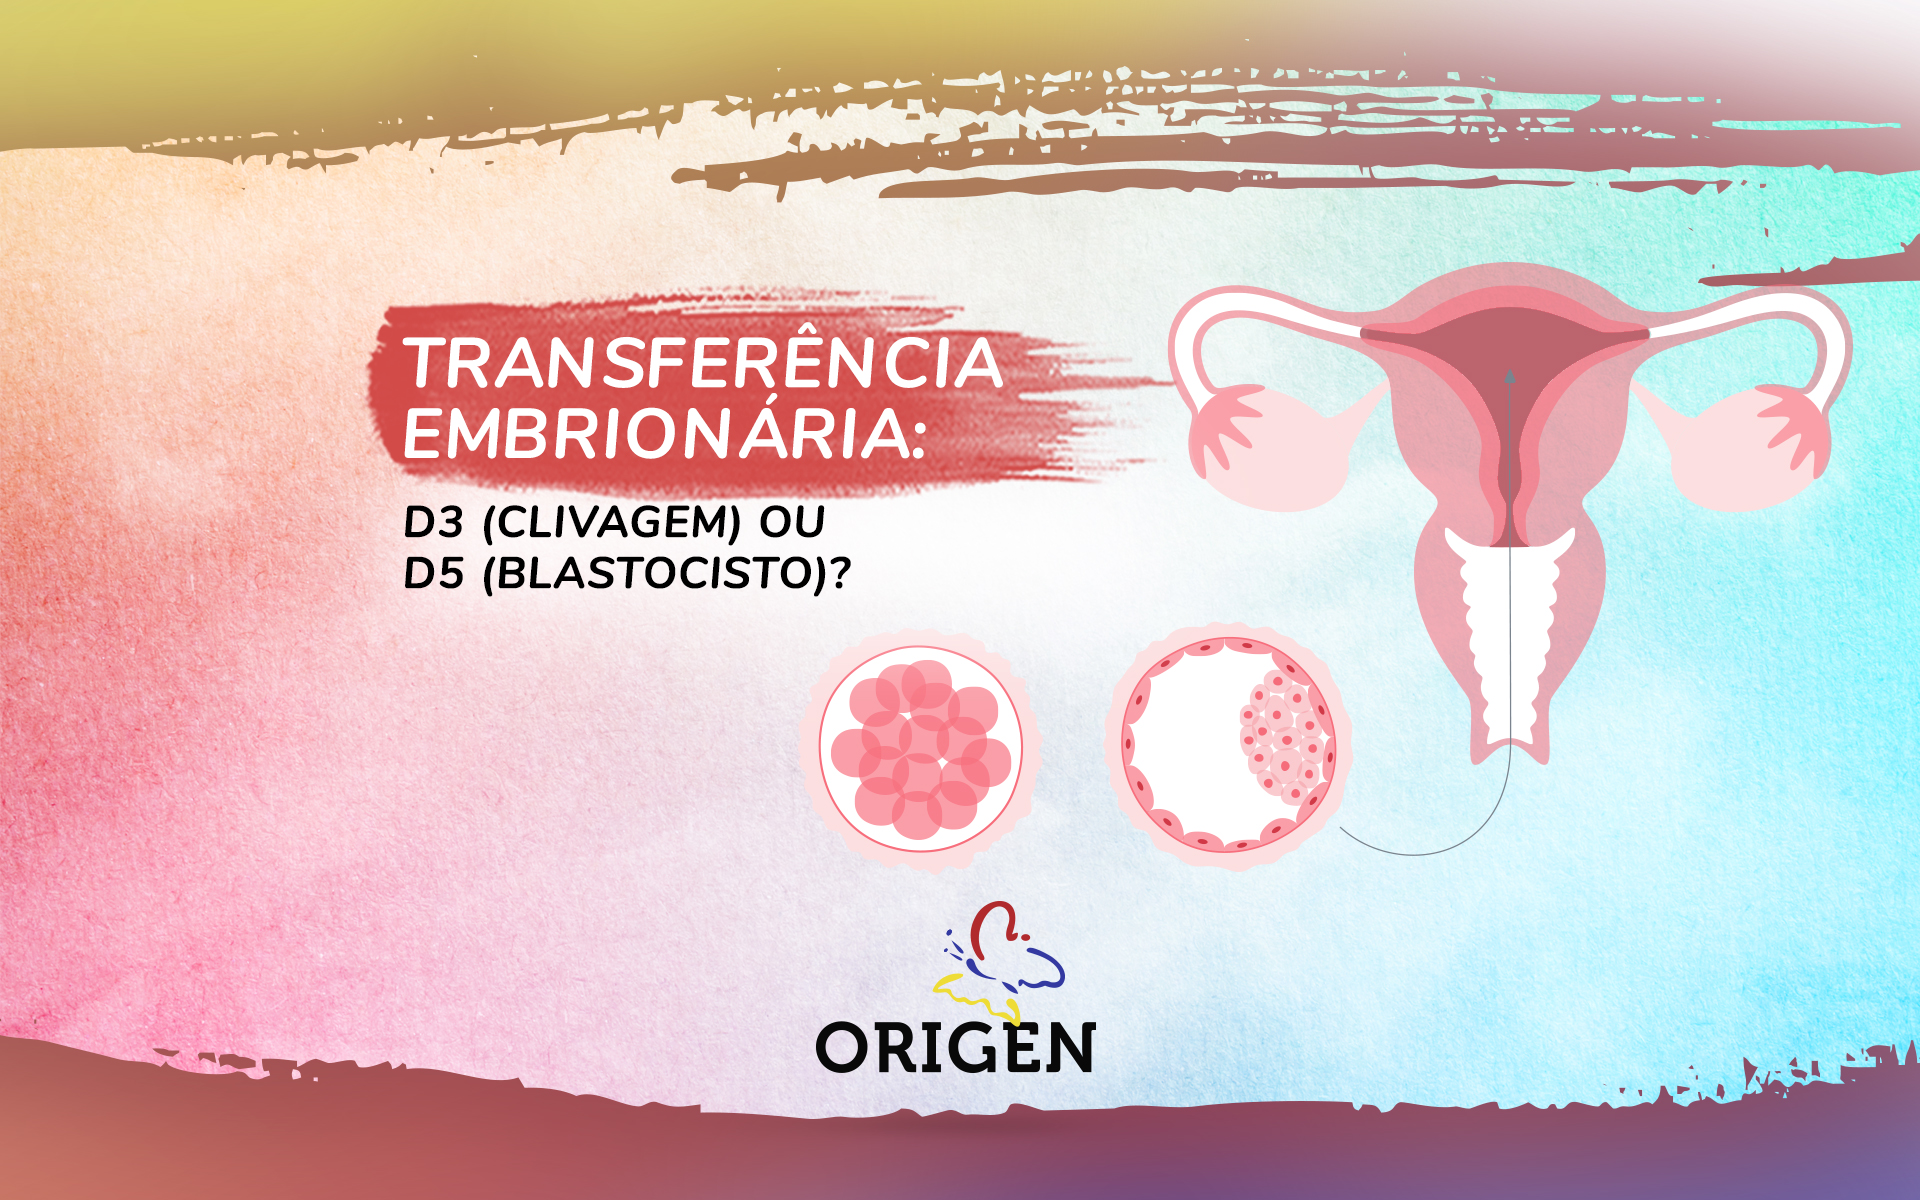 Transferência embrionária: D3 (clivagem) ou D5 (blastocisto)?